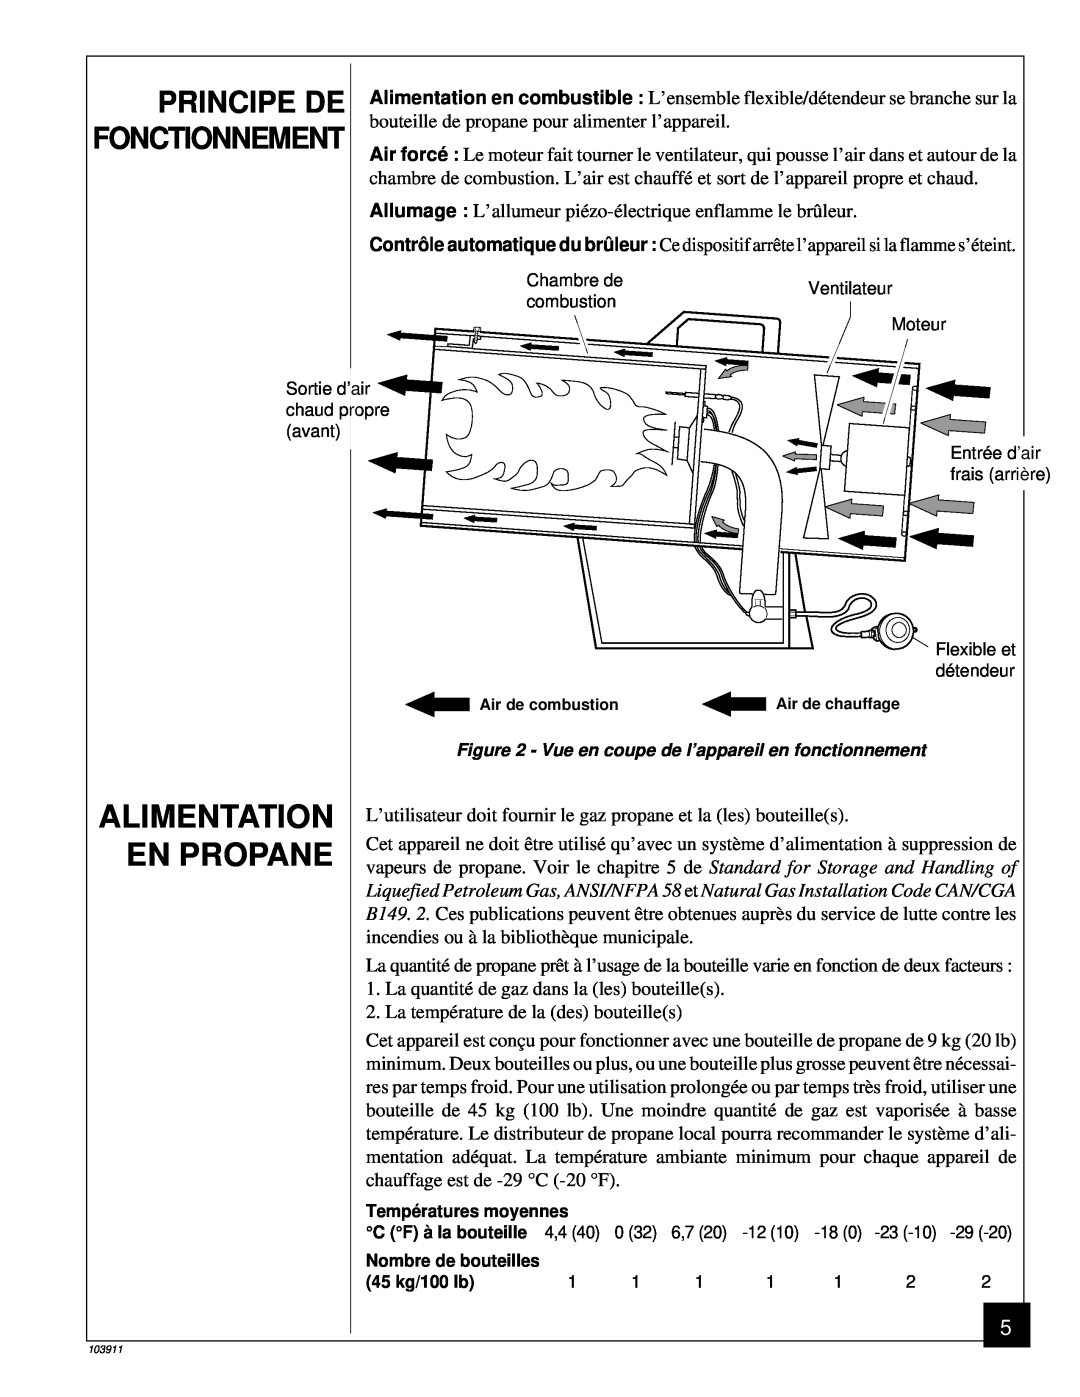 Desa RCLP50B owner manual Principe De, Fonctionnement, En Propane, Alimentation 